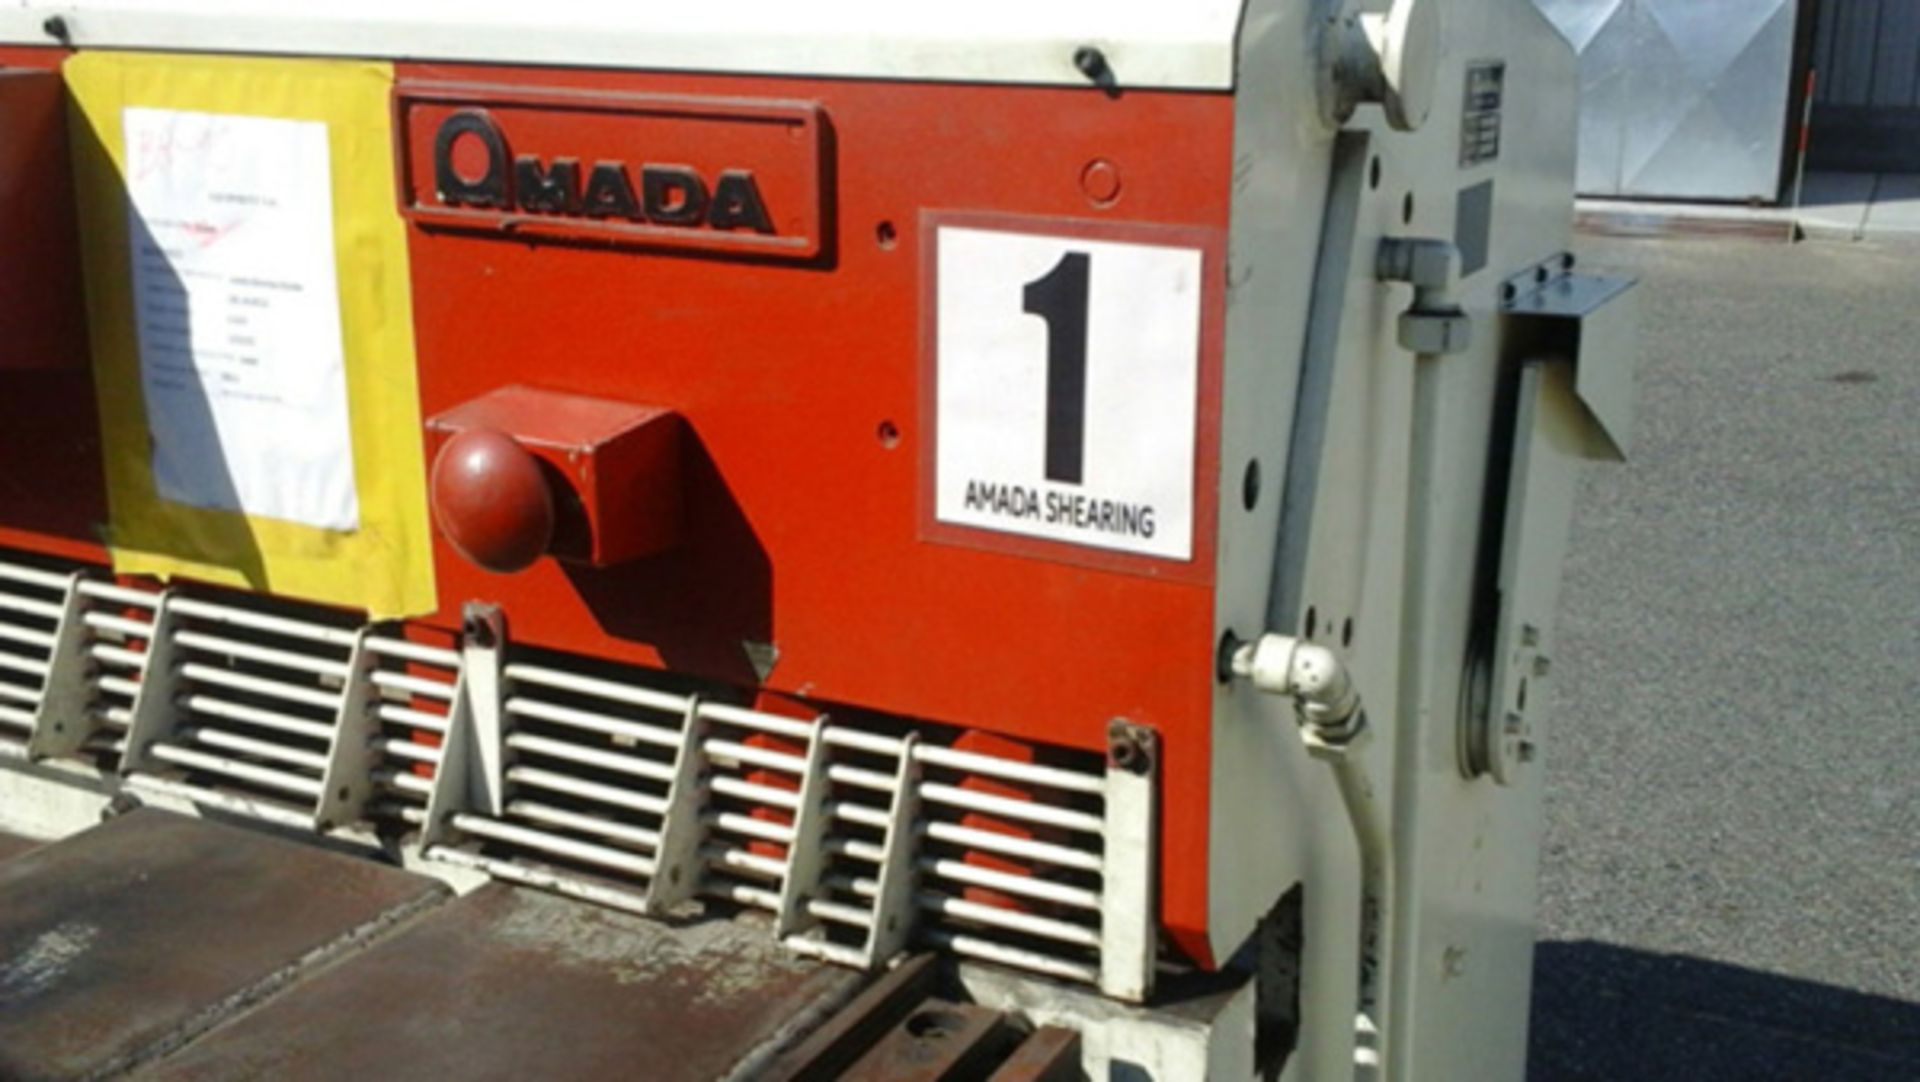 1984 Amada Hydraulic Power Shear | 10 Ga. x 4', Mdl: S-1232, S/N: 12321431 - 6995P - Image 5 of 6